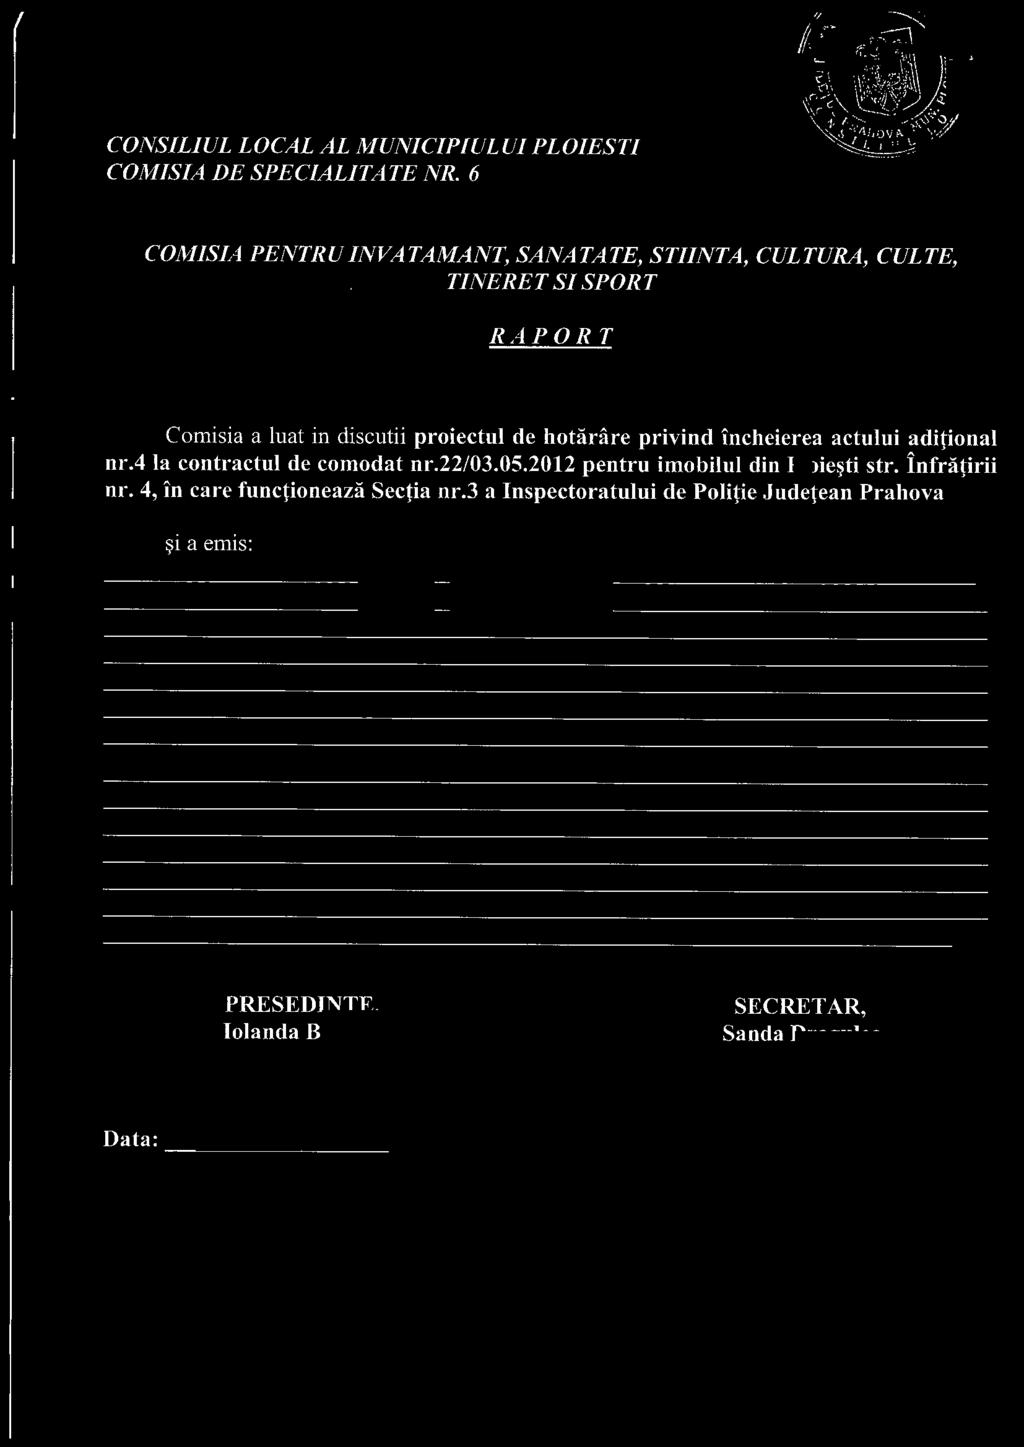 hotarare privind incheierea actului adiponal nr.4 Ia contractu! de comodat nr.22/03.05.2012 pentru imobilul din Ploie~ti str.